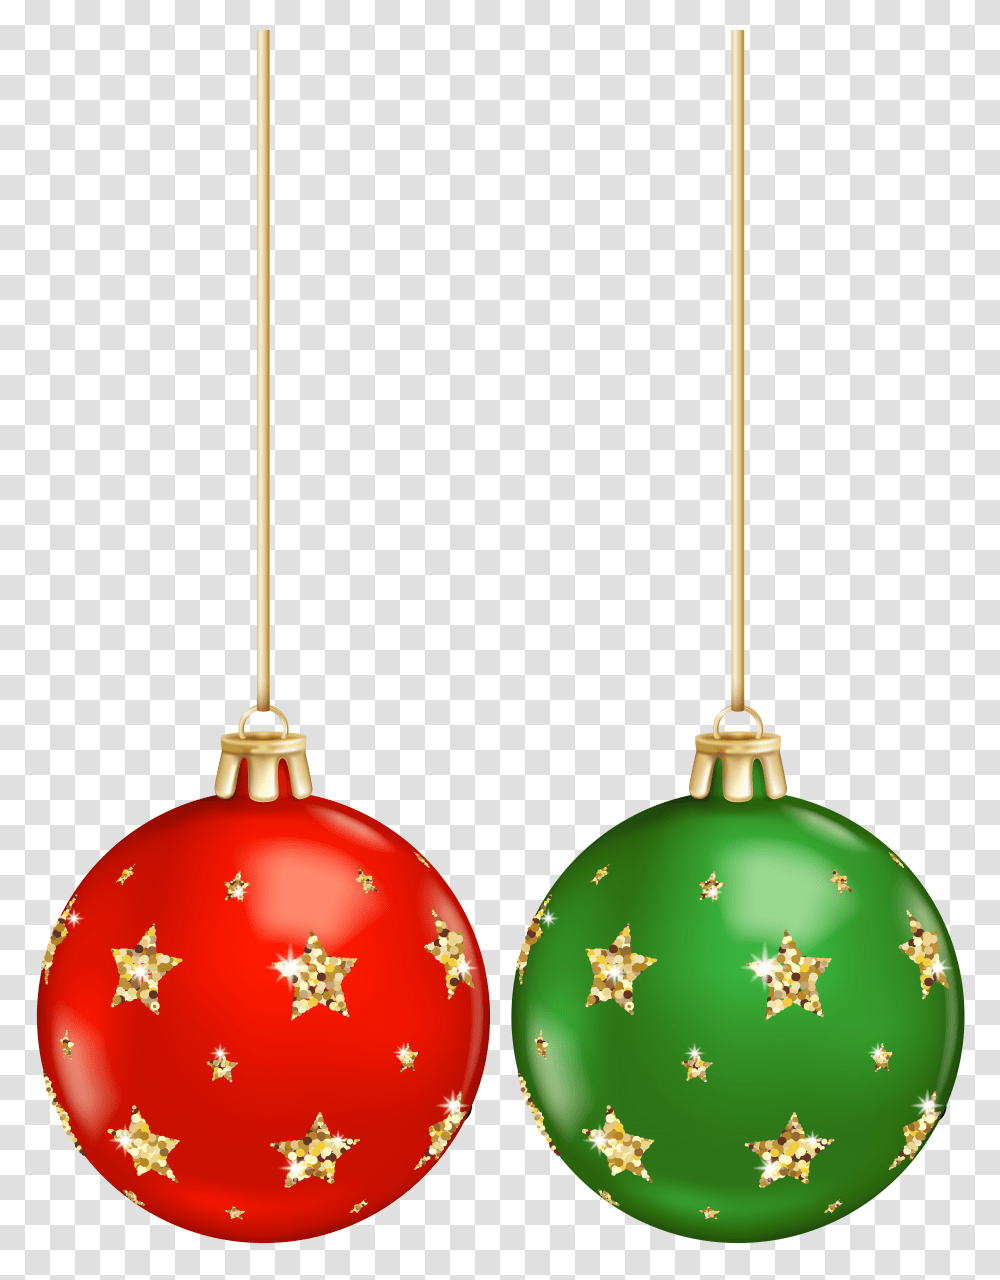 Christmas Decorative Balls Clip, Ornament, Tree, Plant, Elf Transparent Png